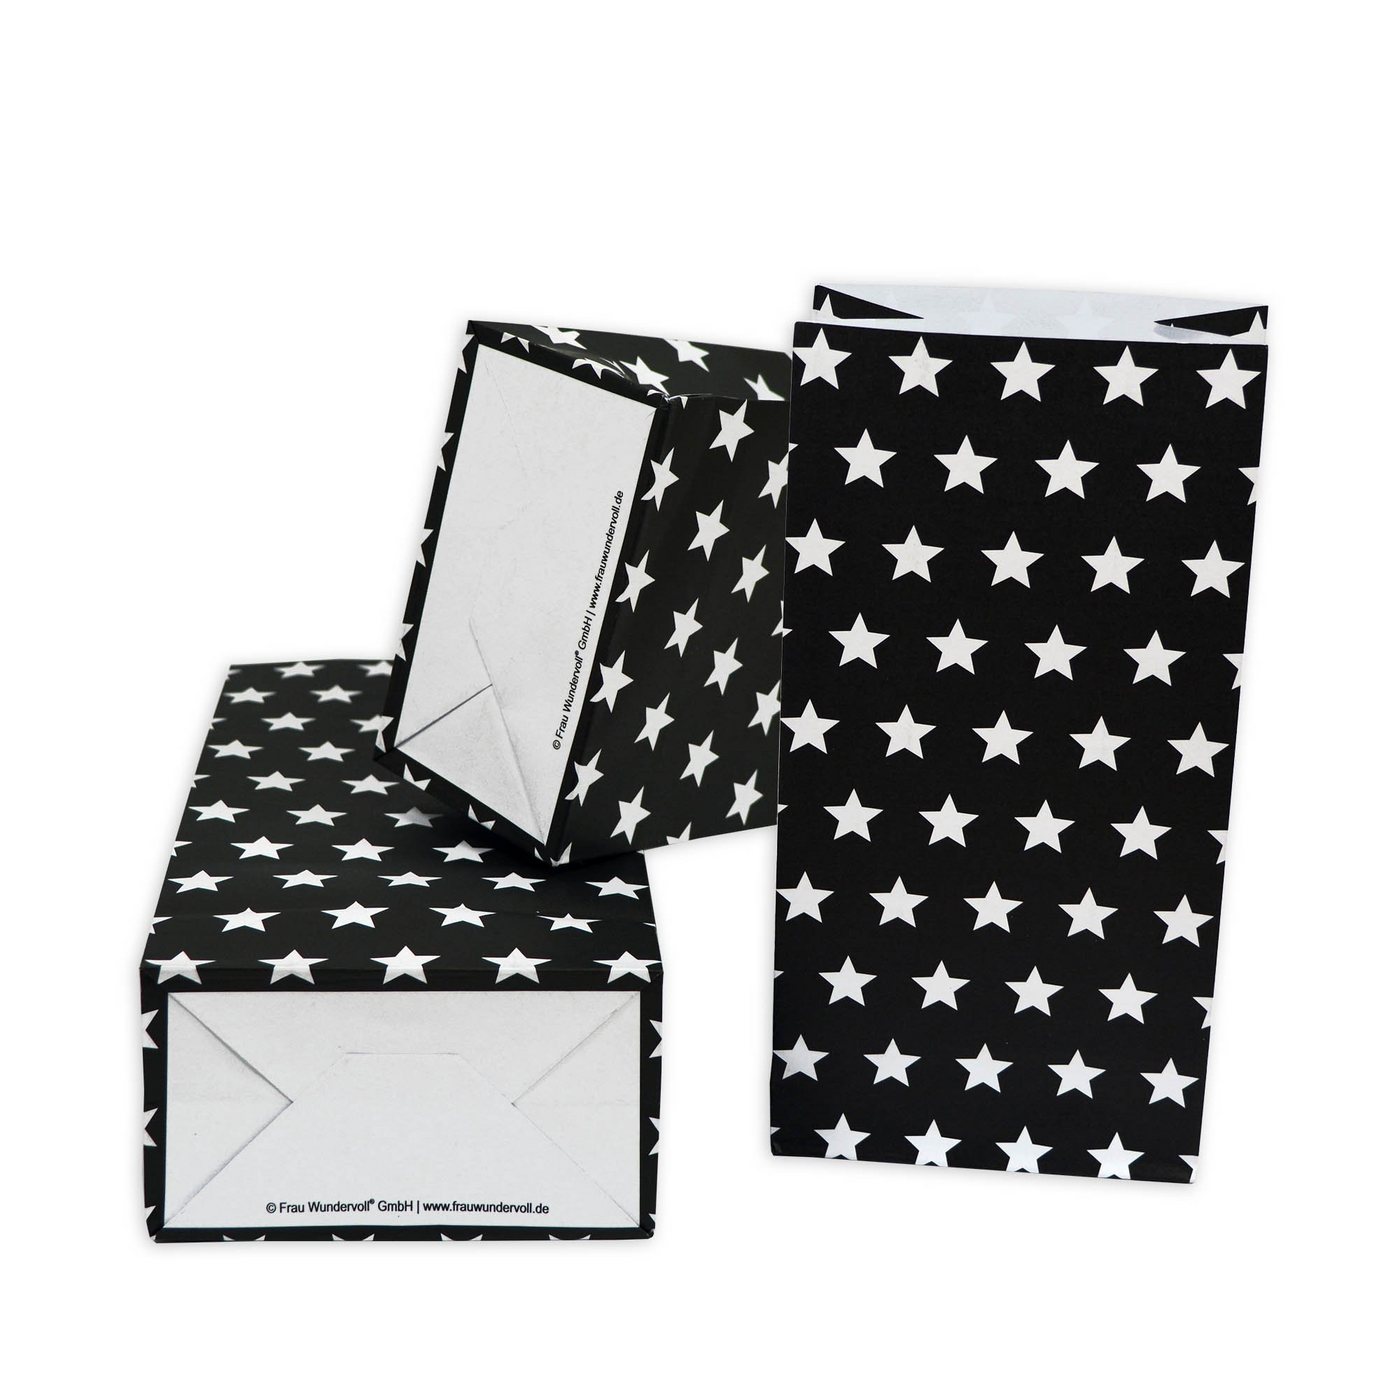 Frau WUNDERVoll Papierdekoration 24 Papiertüten mit Boden, schwarz matt weiße Sterne, 12x7x24cm / Block von Frau WUNDERVoll